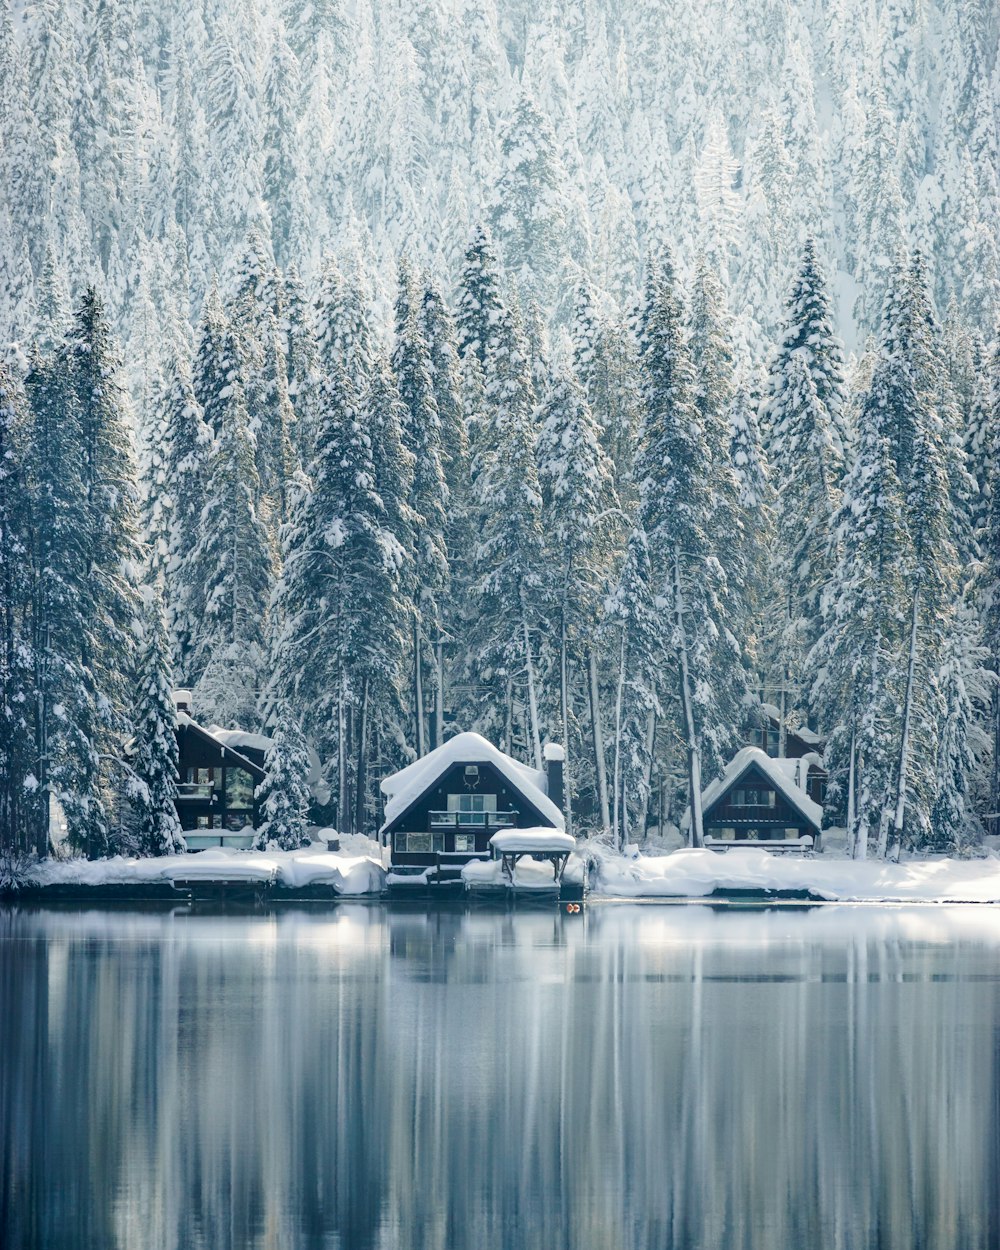 Casas cubiertas de nieve cerca de los árboles